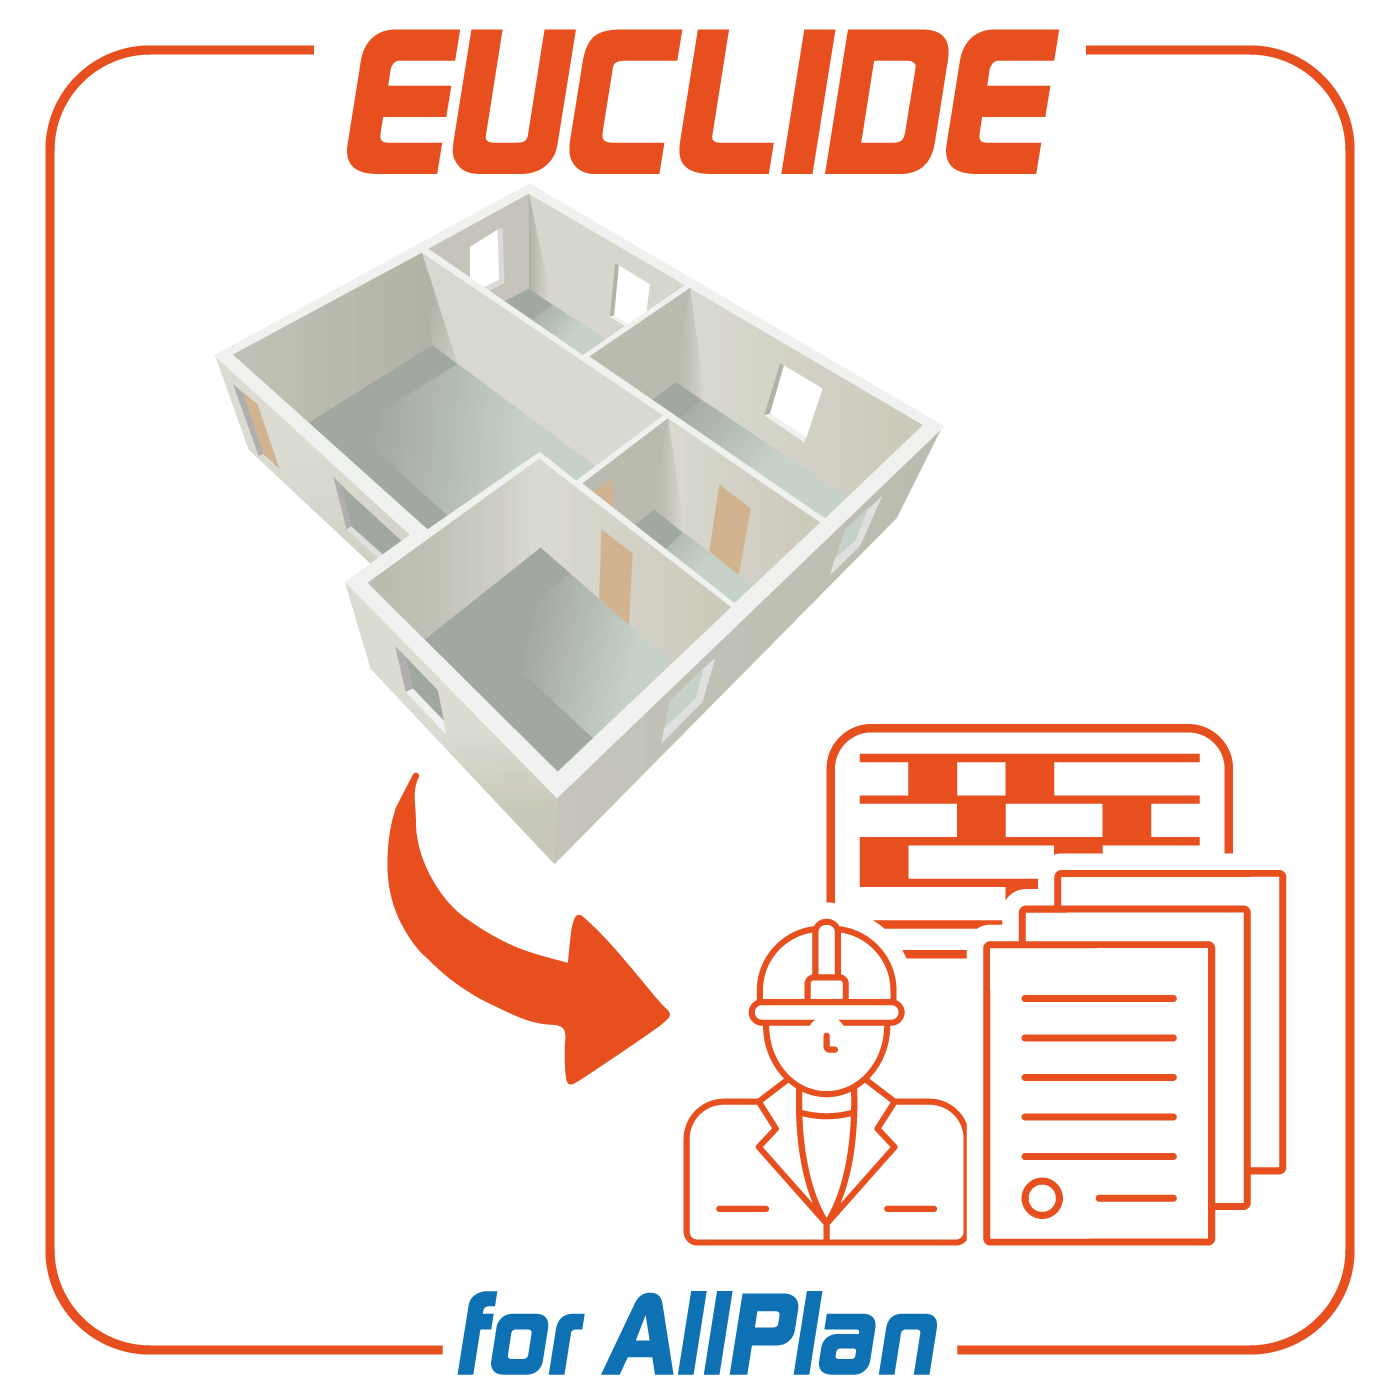 Euclide for AllPlanPlugin per Nemetschek AllPlan che consente di creare in maniera automatica il computo metrico in formato Euclide.